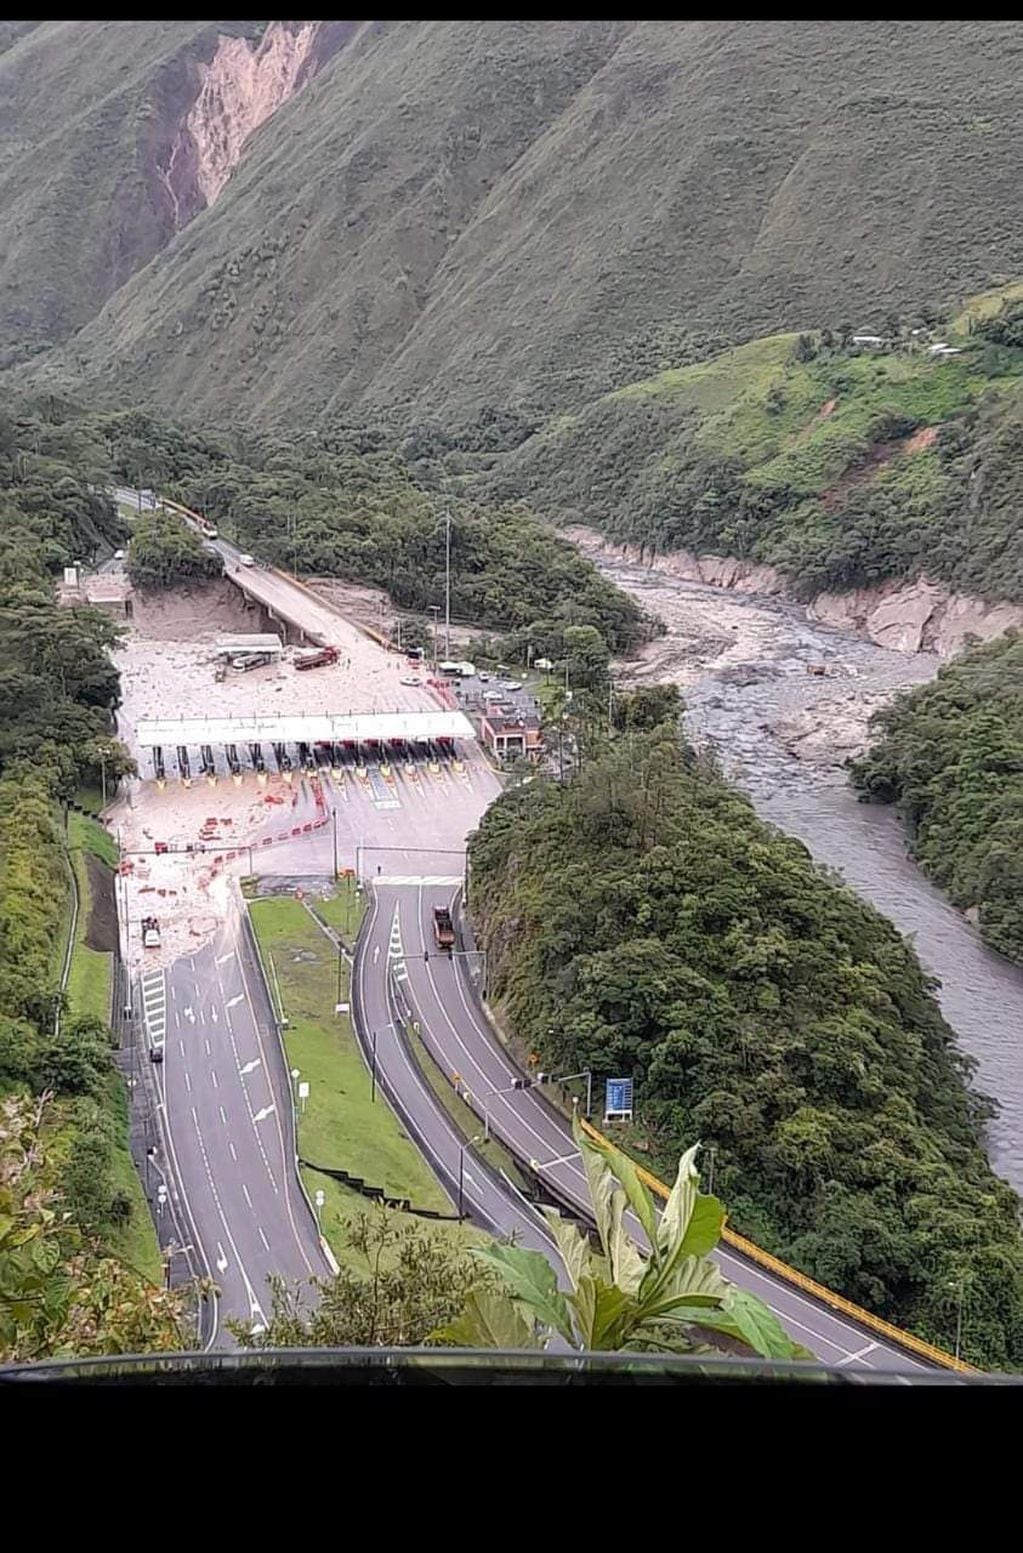 Ocurrió sobre la vía entre Bogotá y Villavicencio, uno de los principales corredores de carga del país. Foto: Twitter.